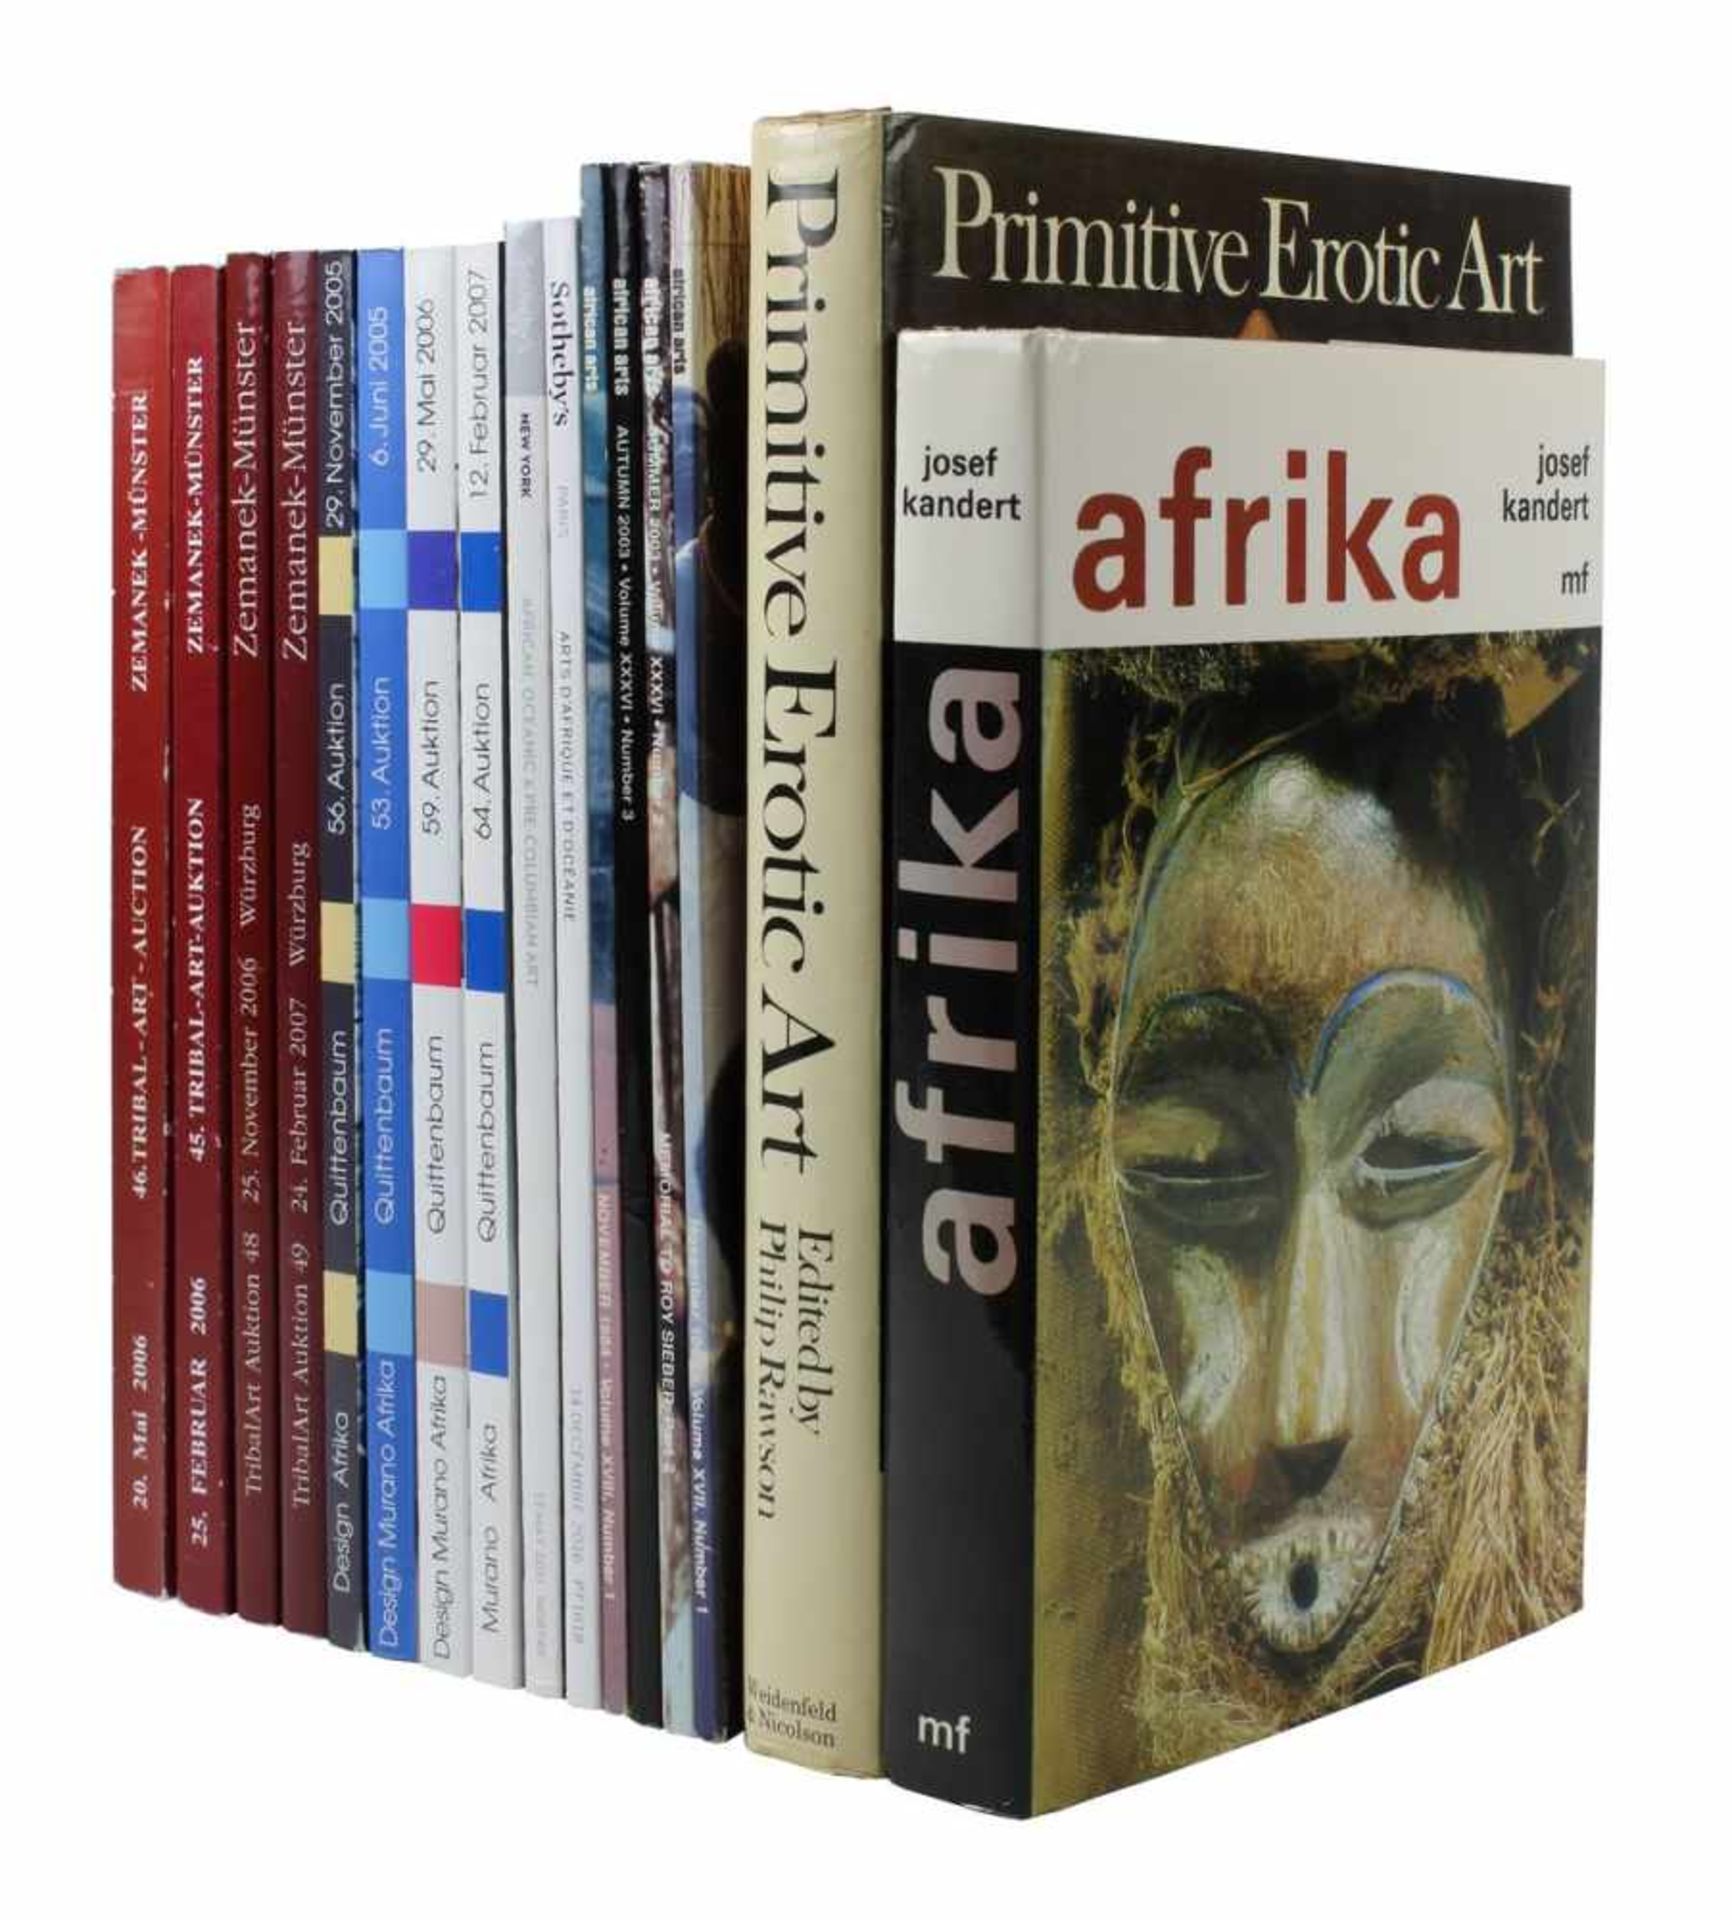 Fünfzehn Kataloge und zwei Bücher zu afrikanischer Kunst: 4 Kataloge Zemanek-Münster 2006 und